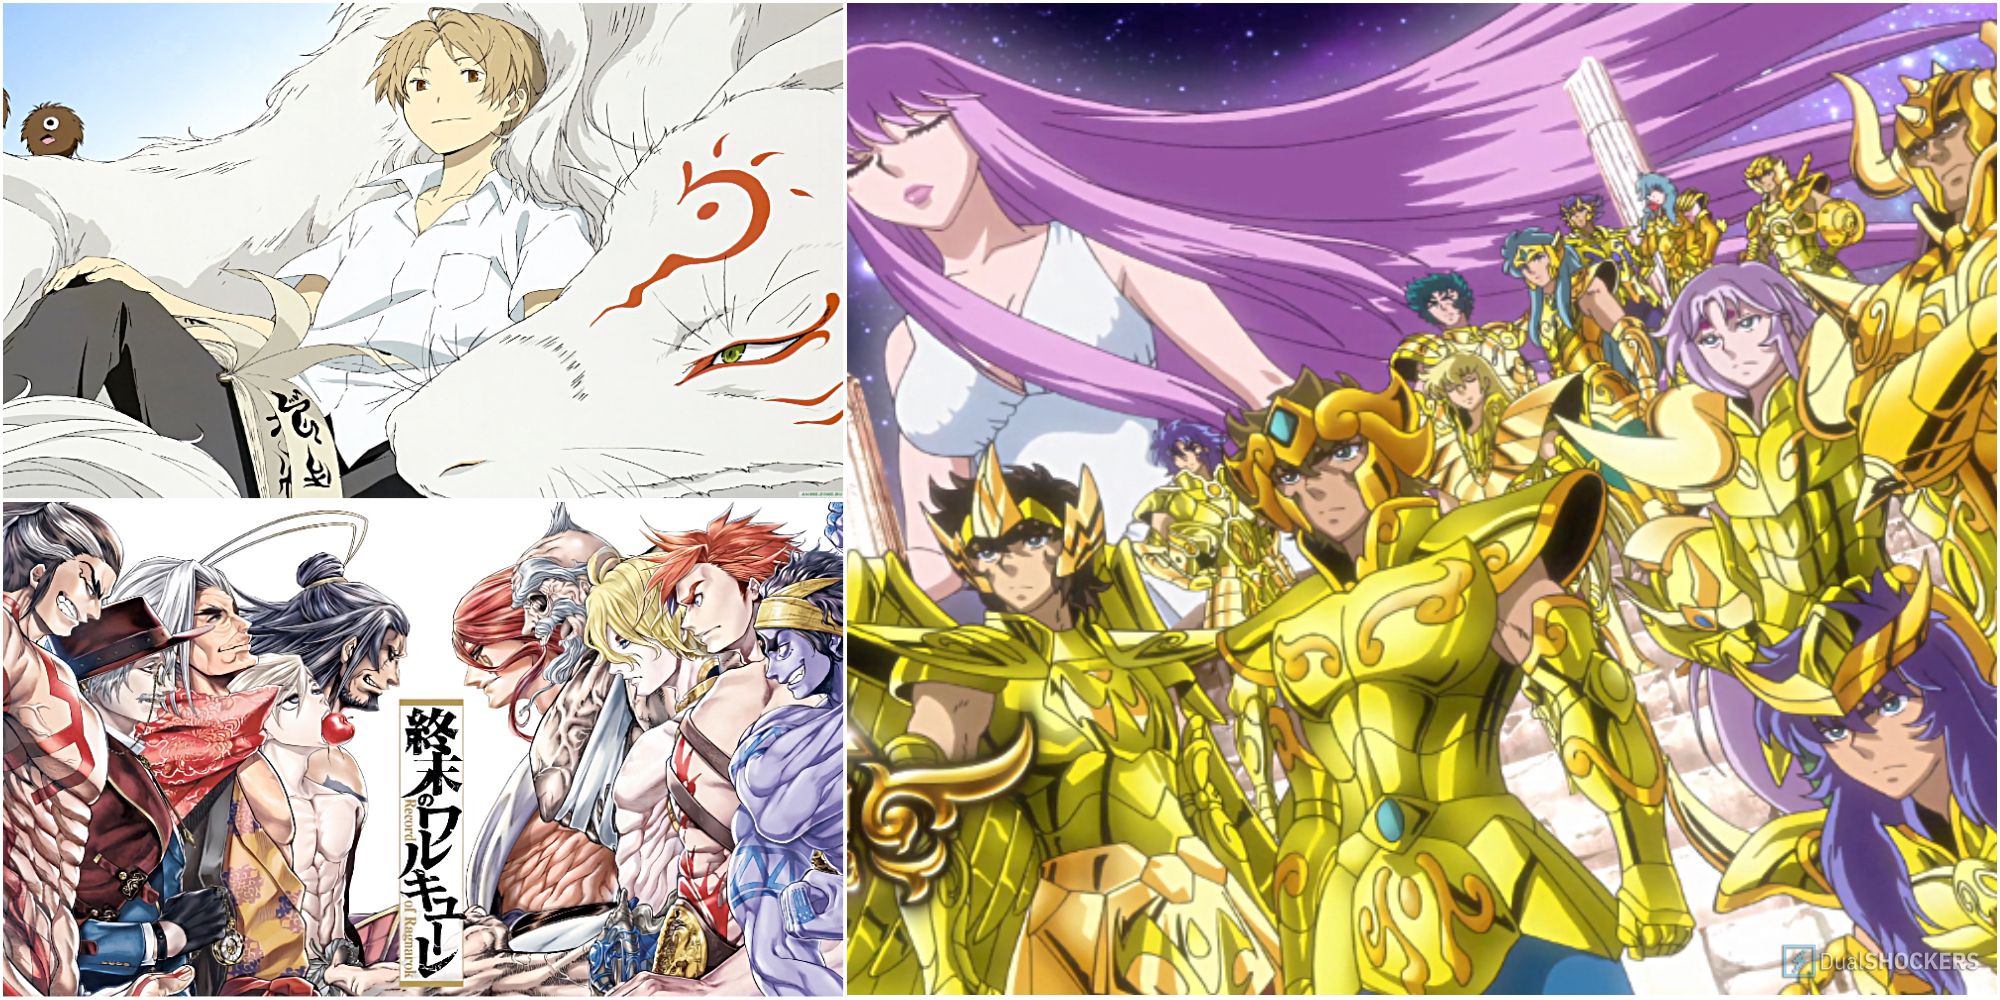 10 Anime That Draw Inspiration from Japanese Mythology